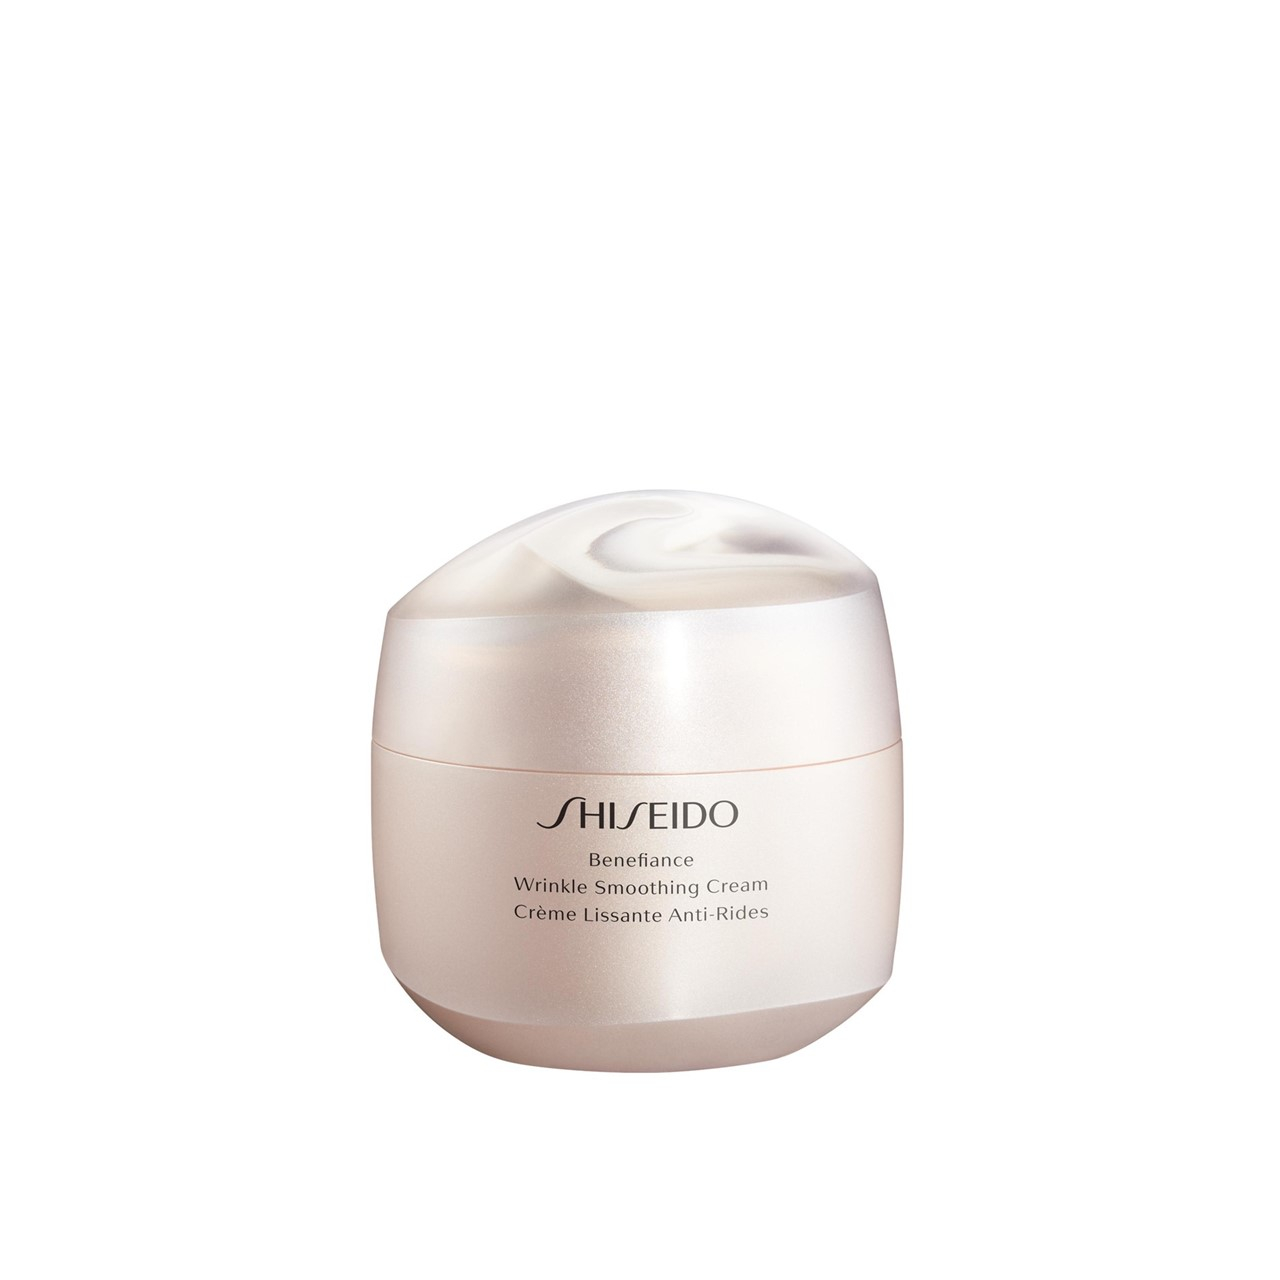 Shiseido Benefiance Wrinkle Smoothing Cream 75ml (2.54fl oz)